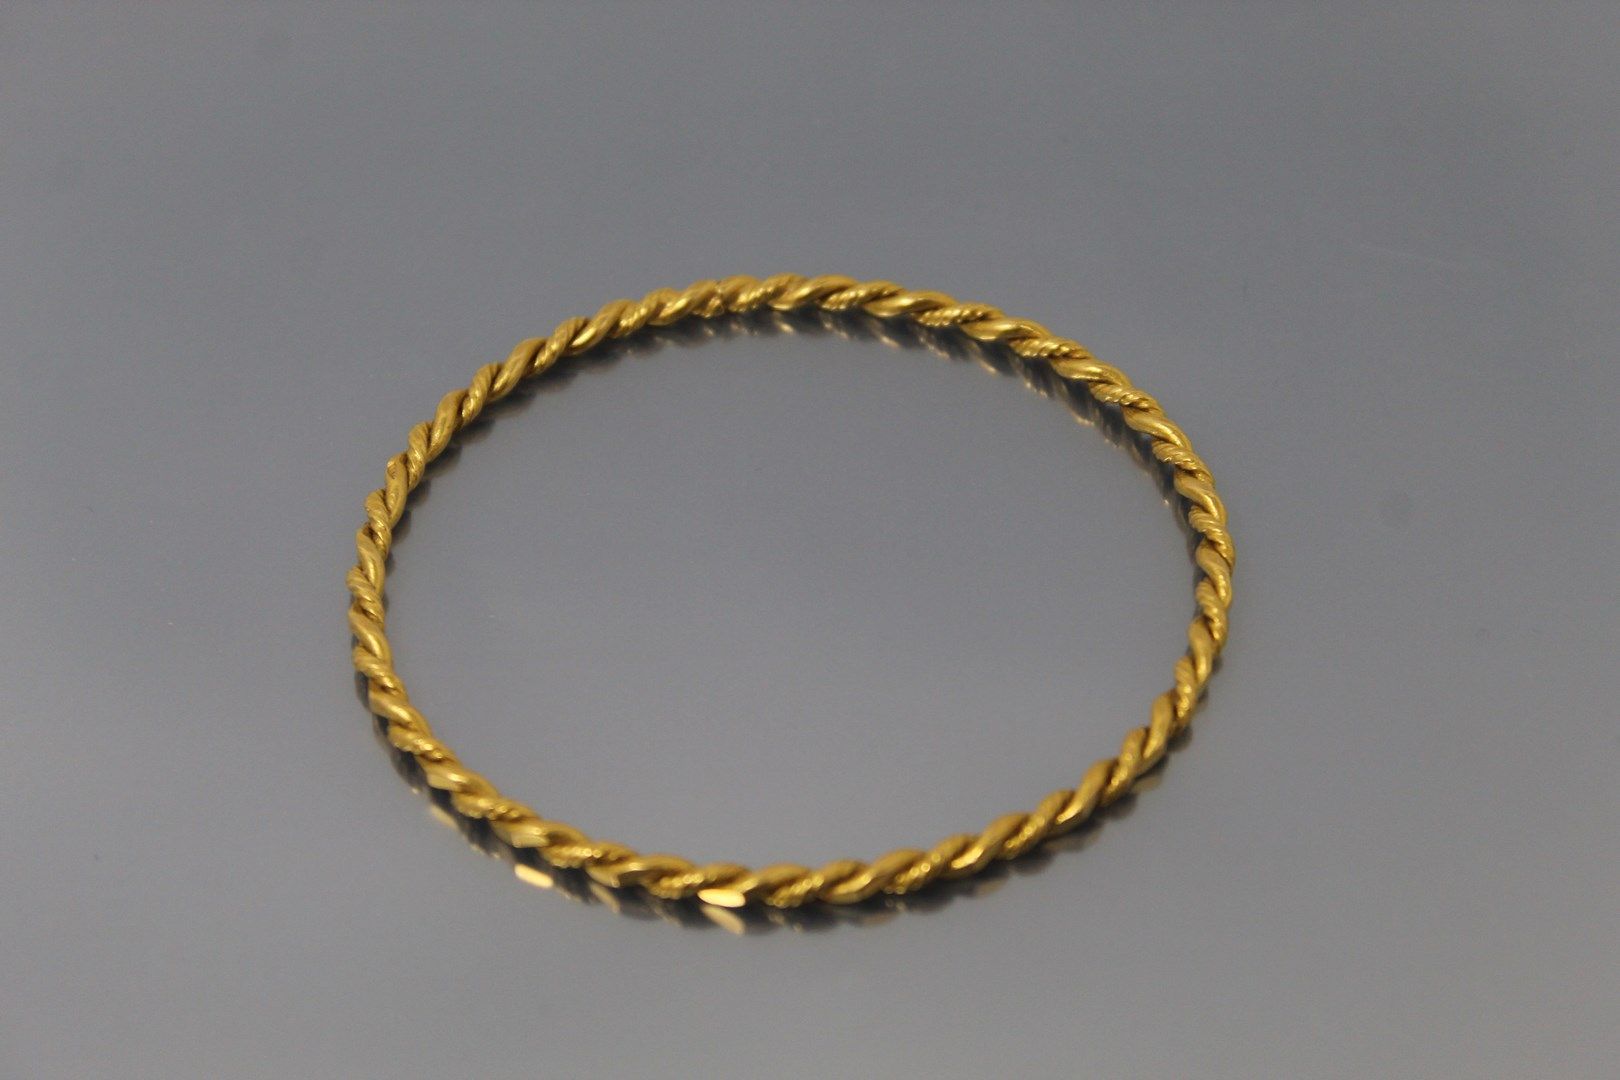 Null Bracciale rigido intrecciato in oro giallo 18 carati (750)

Peso: 17,05 g.